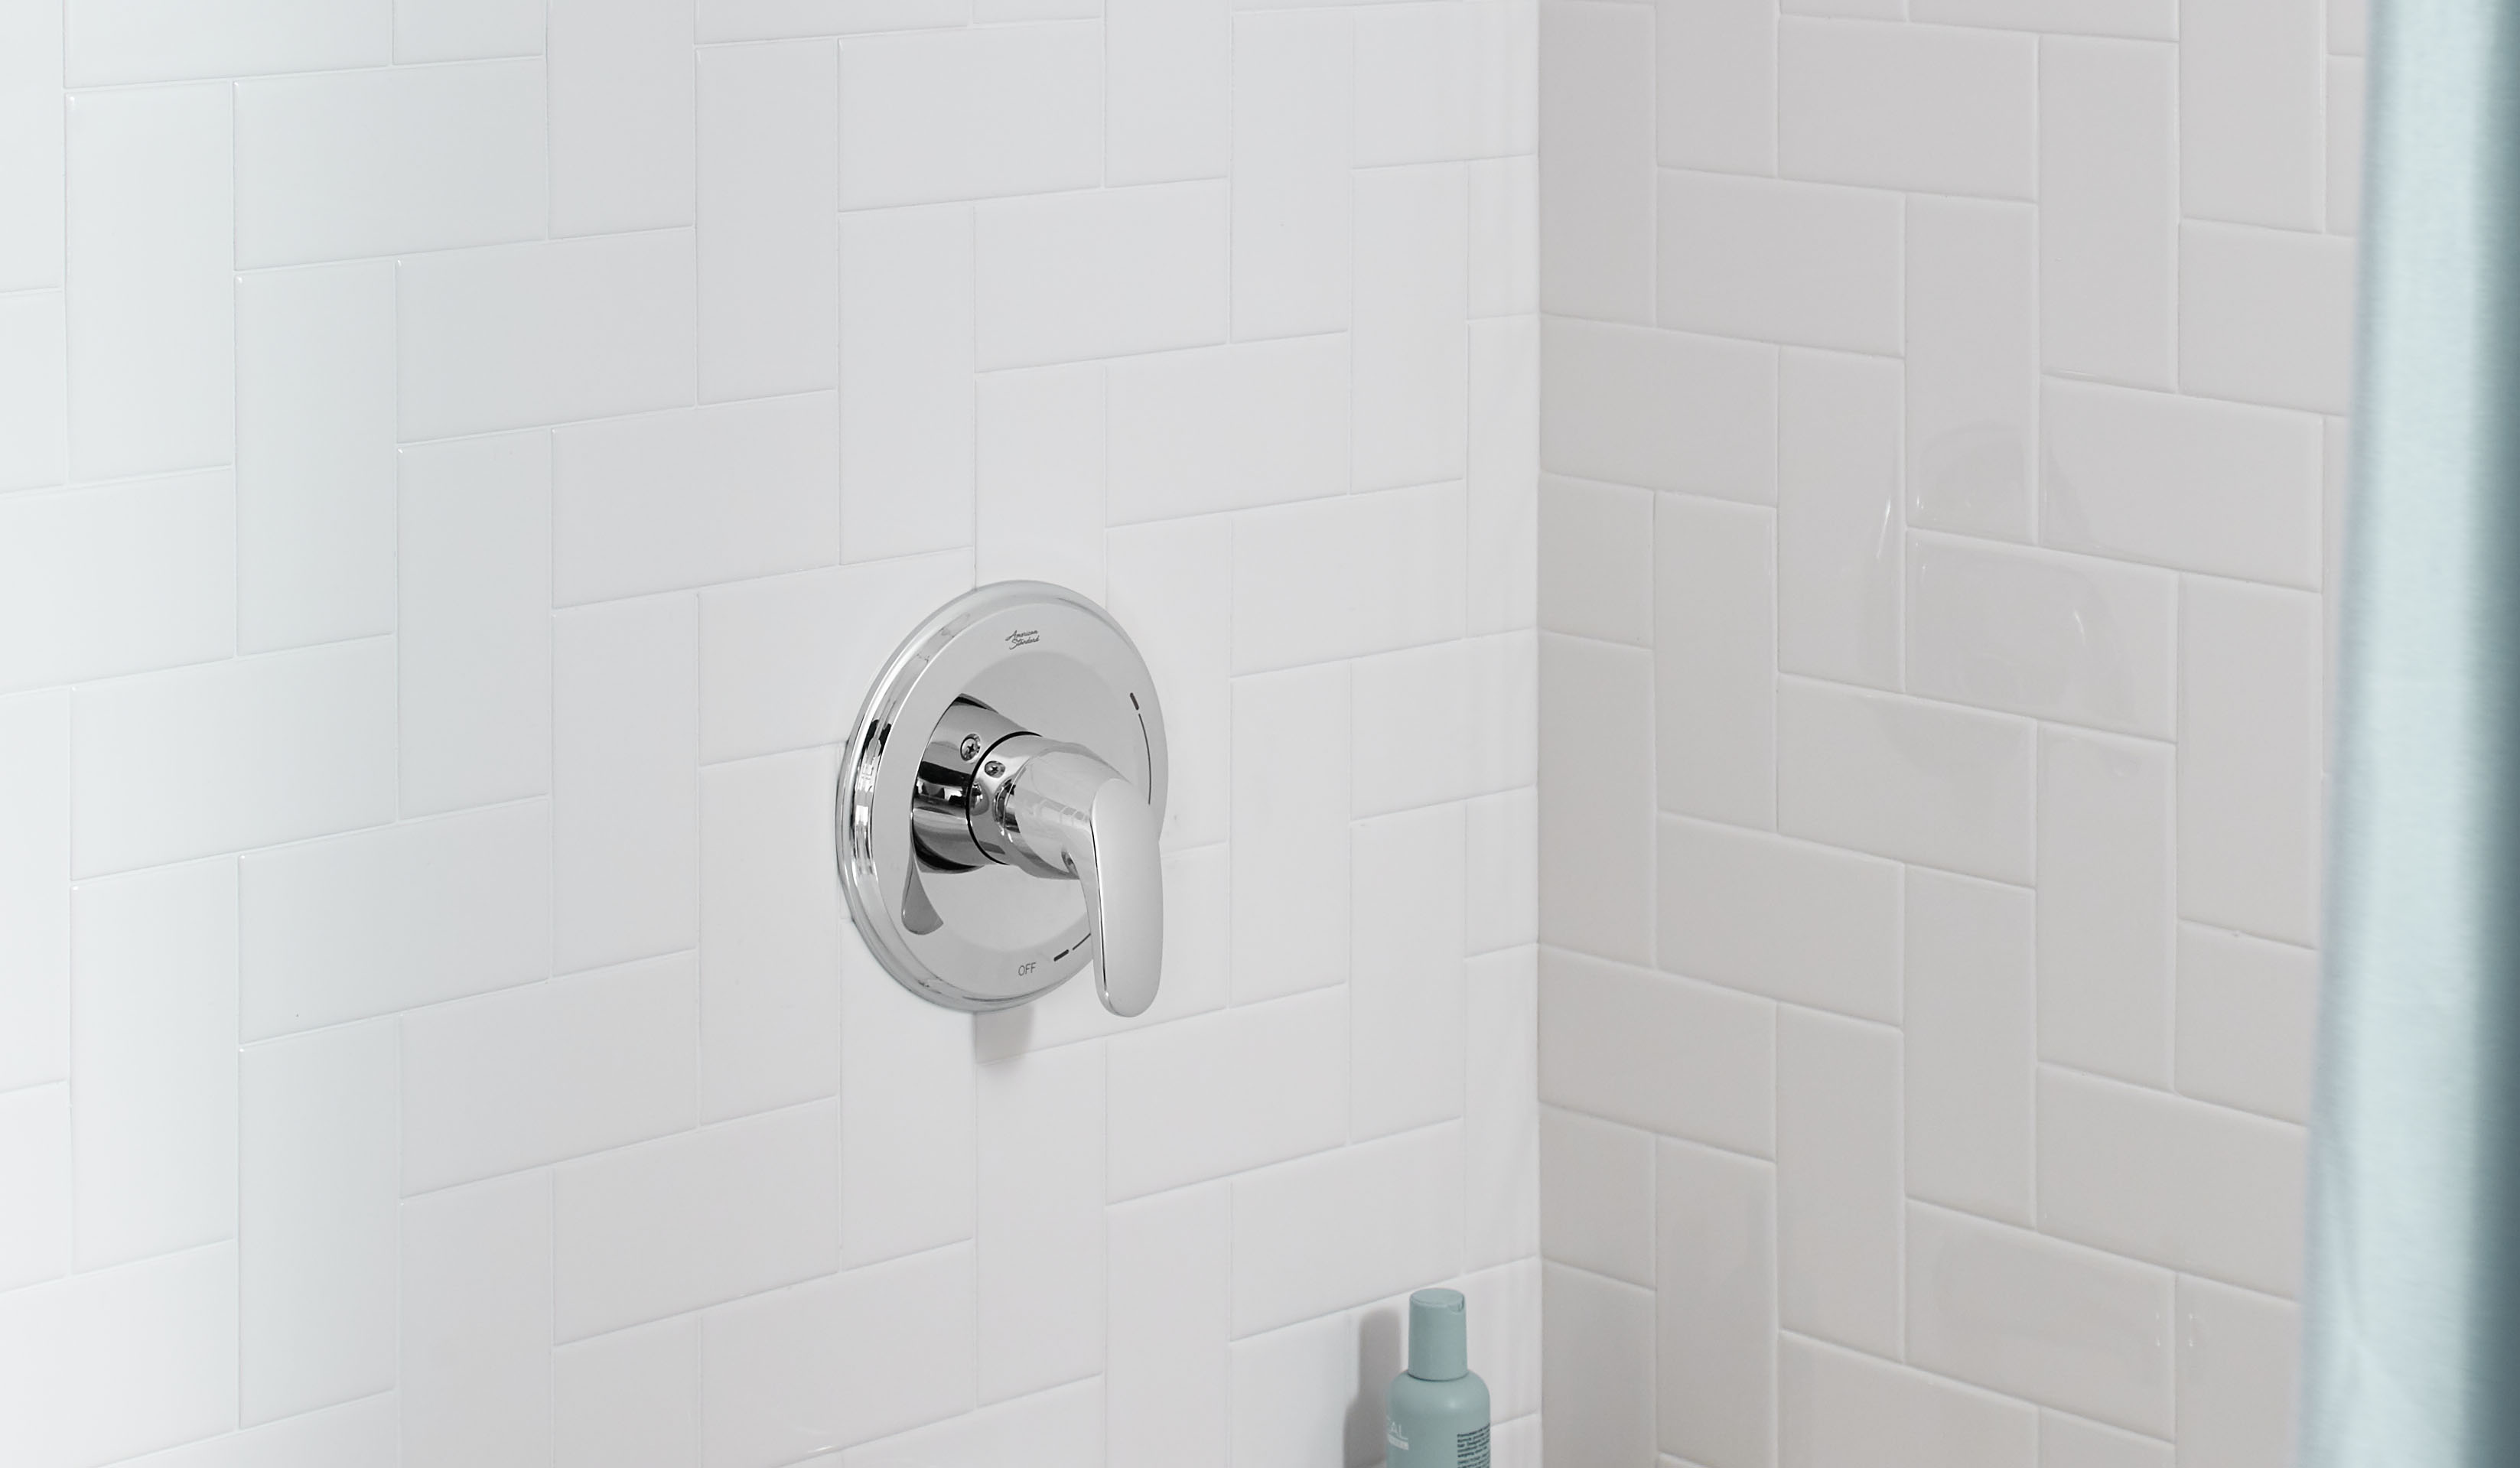 ColonyMC PRO - Ensemble de robinetterie pour douche 1,75 gpm/6,6 L/min incluant une pomme de douche à économie d'eau, une cartouche à pression équilibrée en double céramique et une poignée à levier